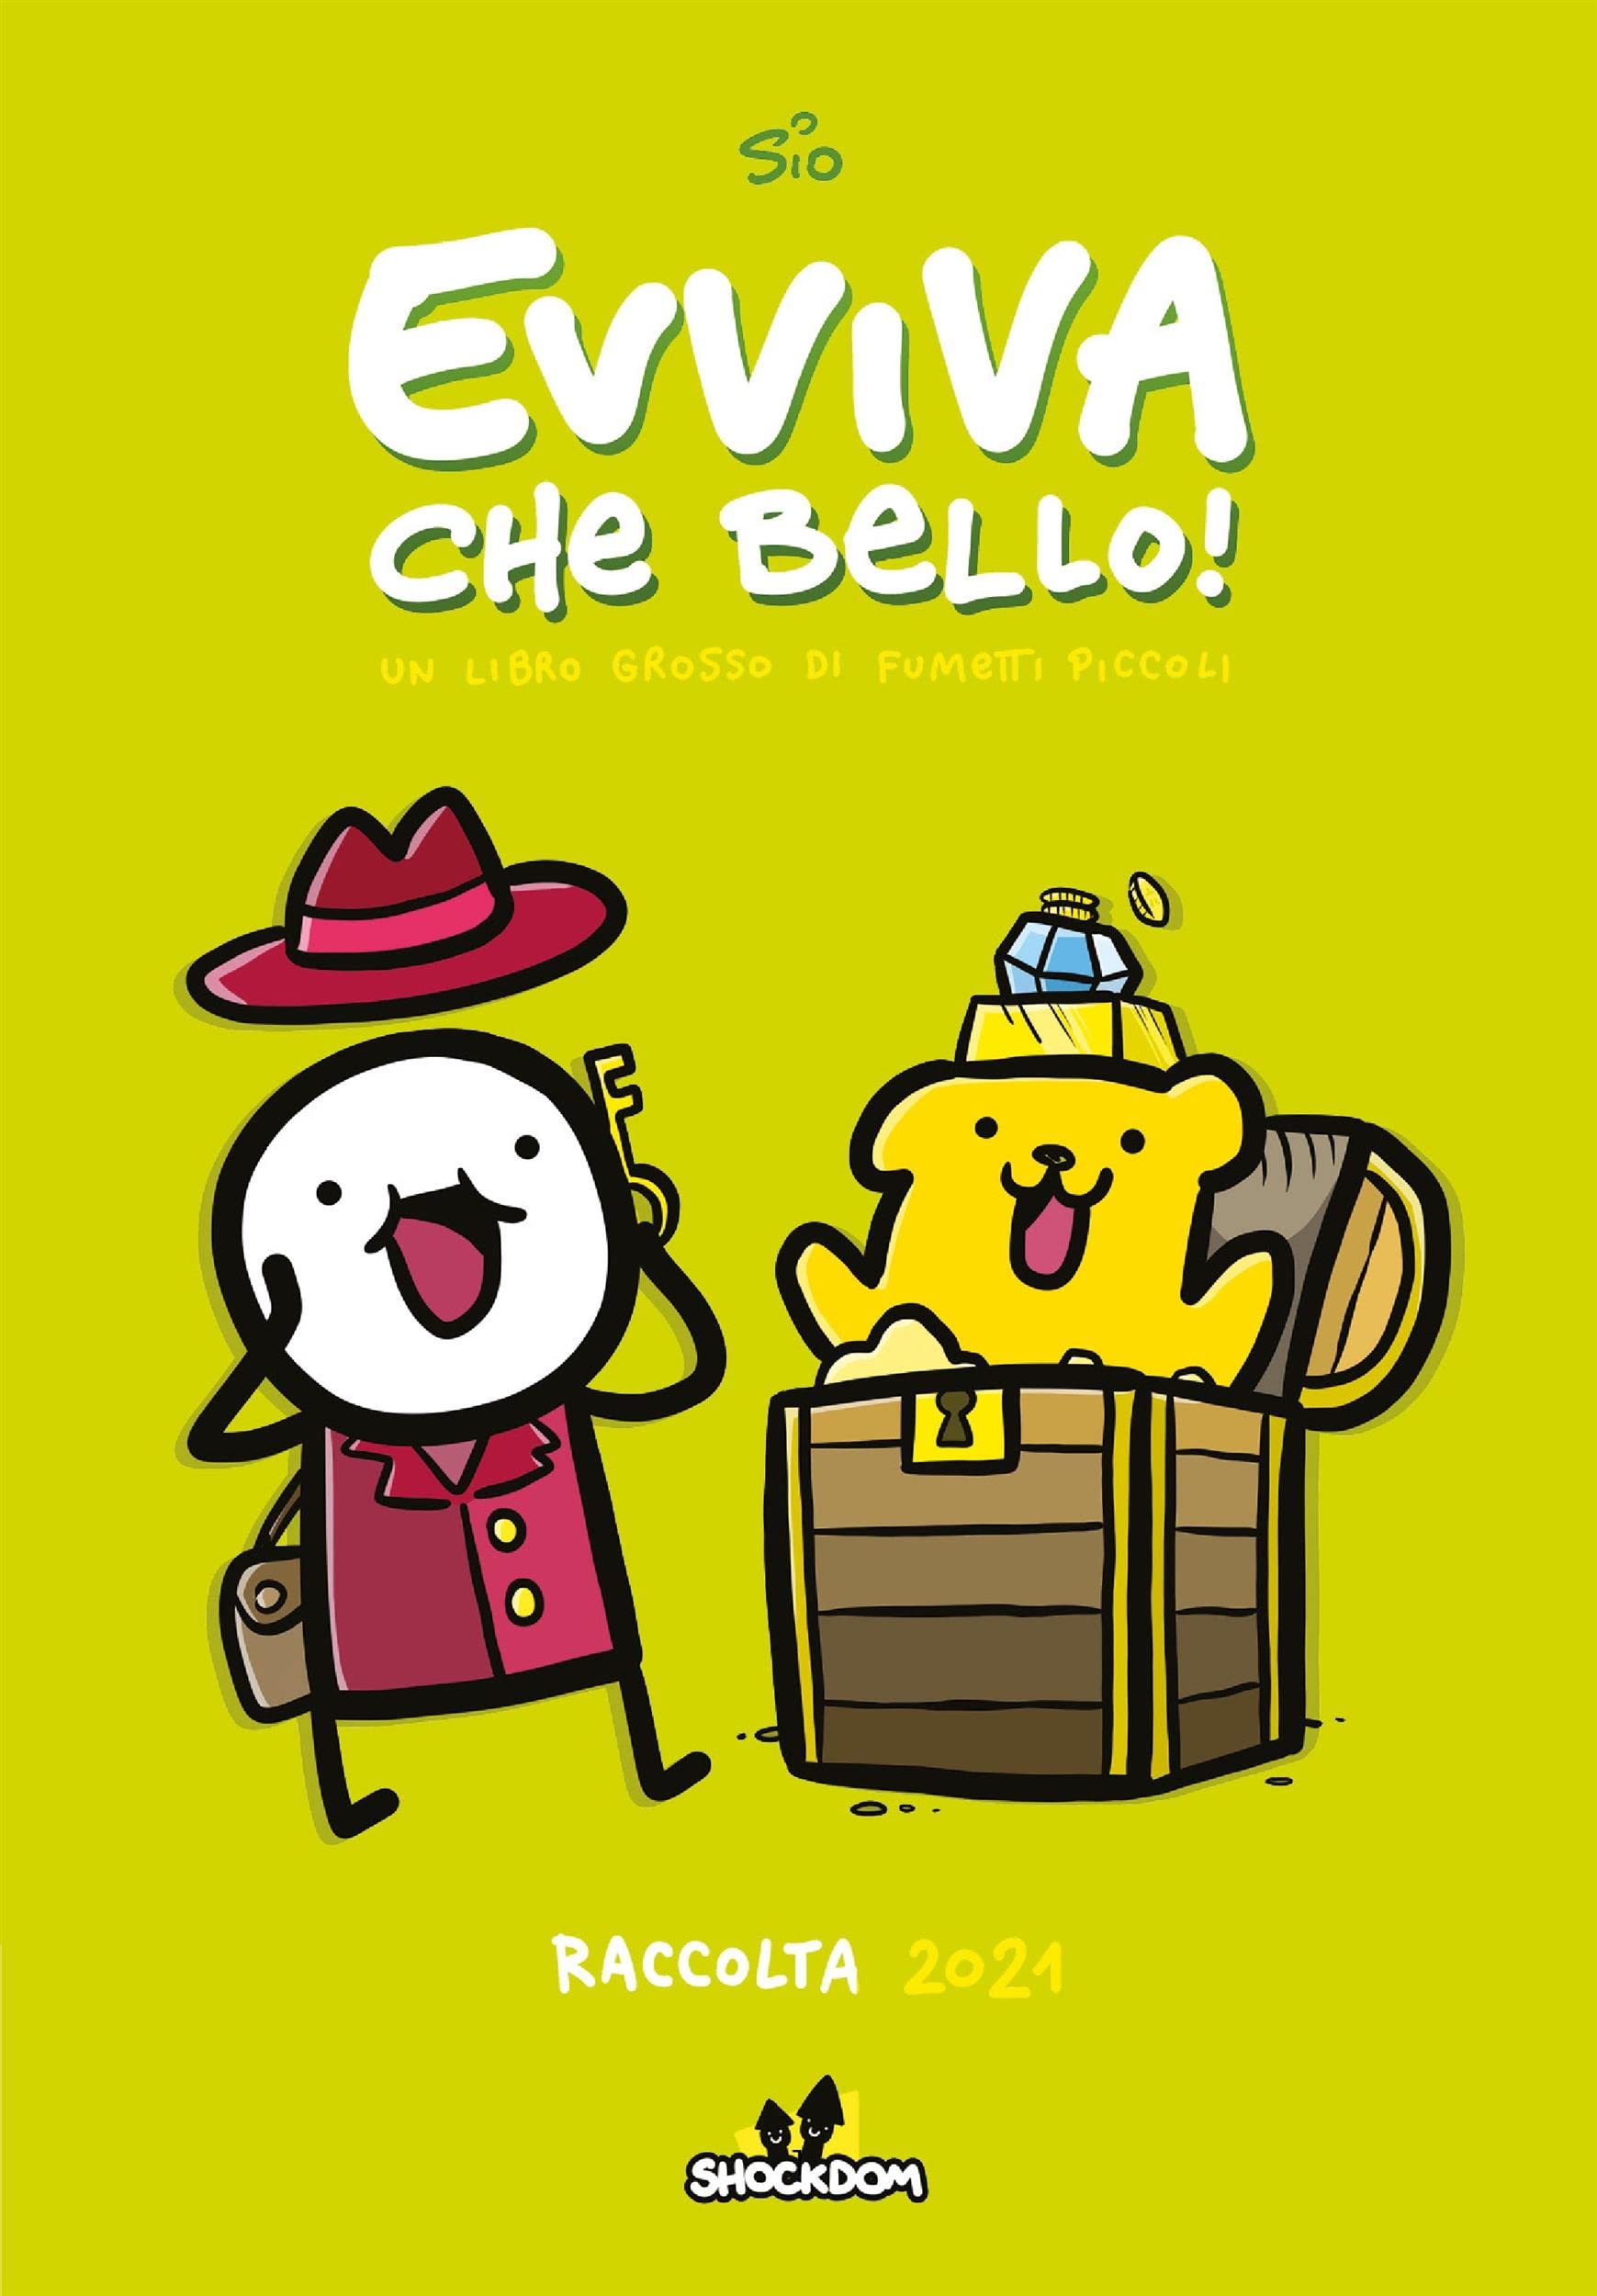 Evviva che bello! Raccolta 2021 (Italian Edition)